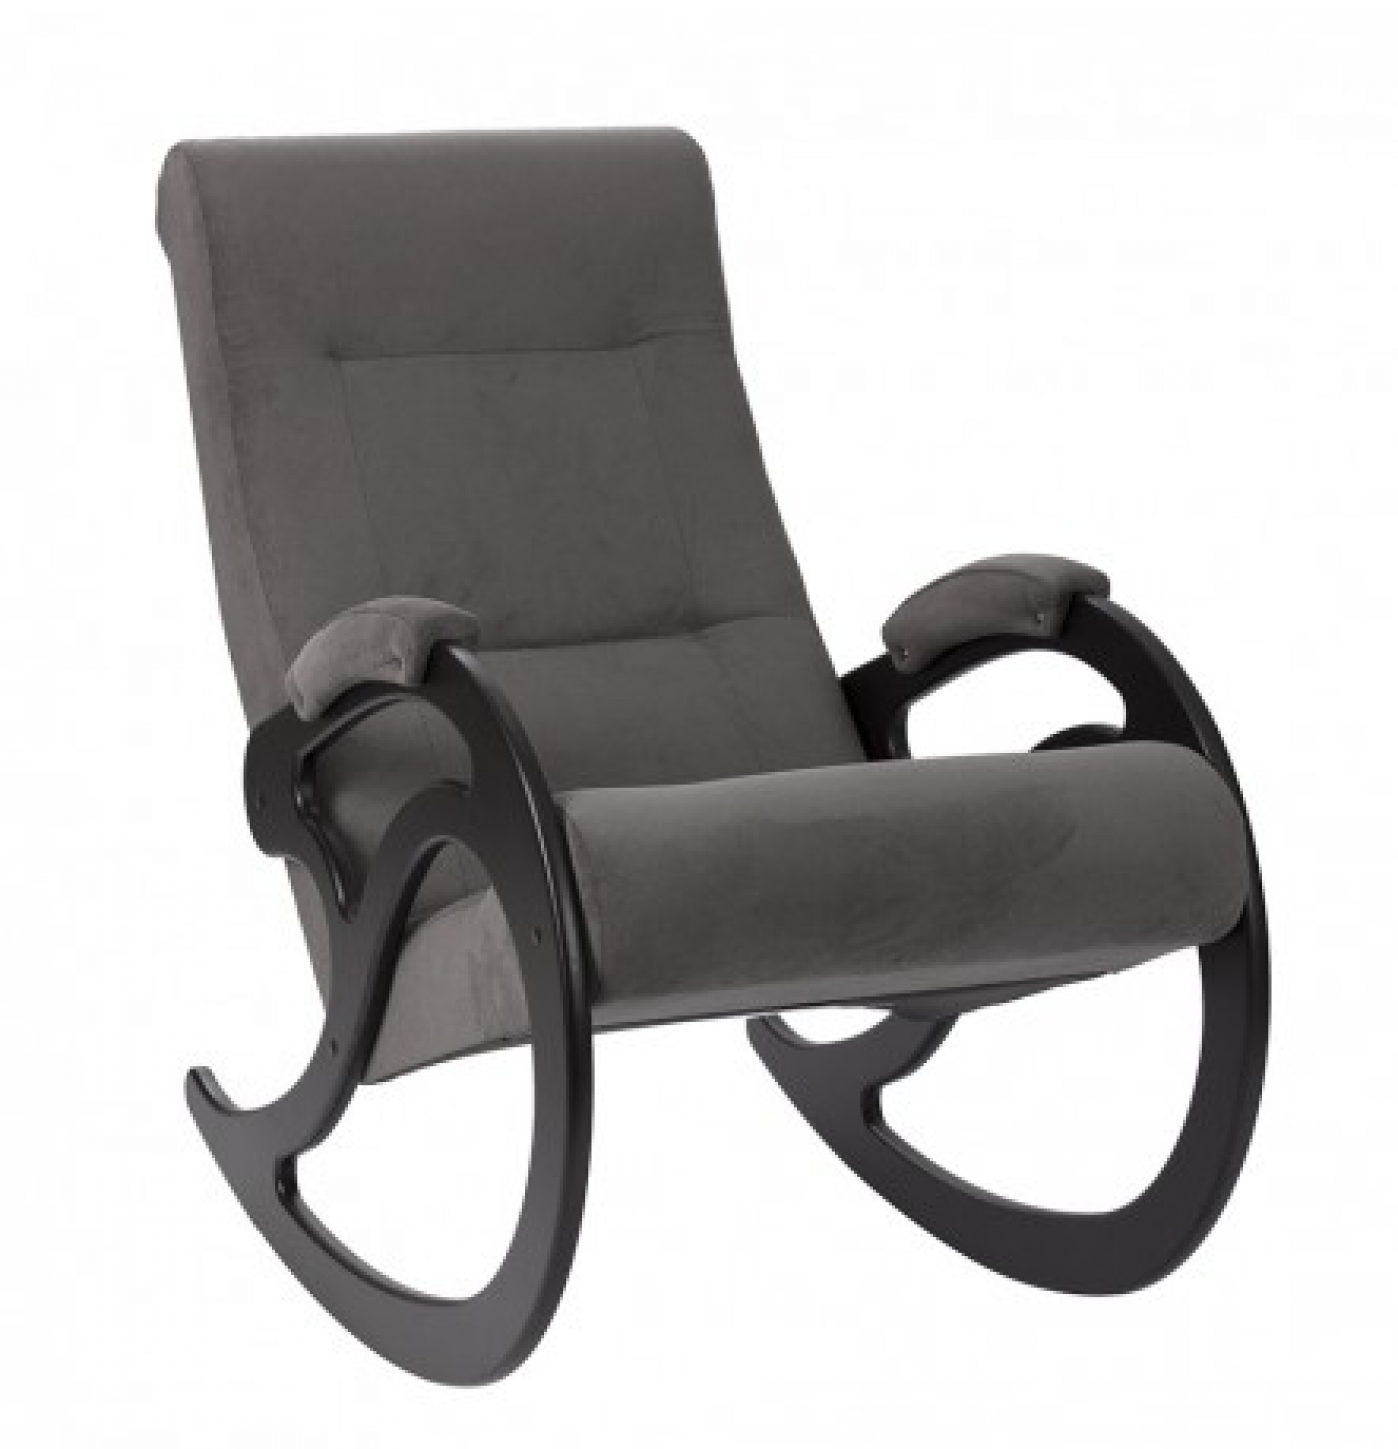 Кресло-качалка "Модель 5" купить в Мебель БиН недорого